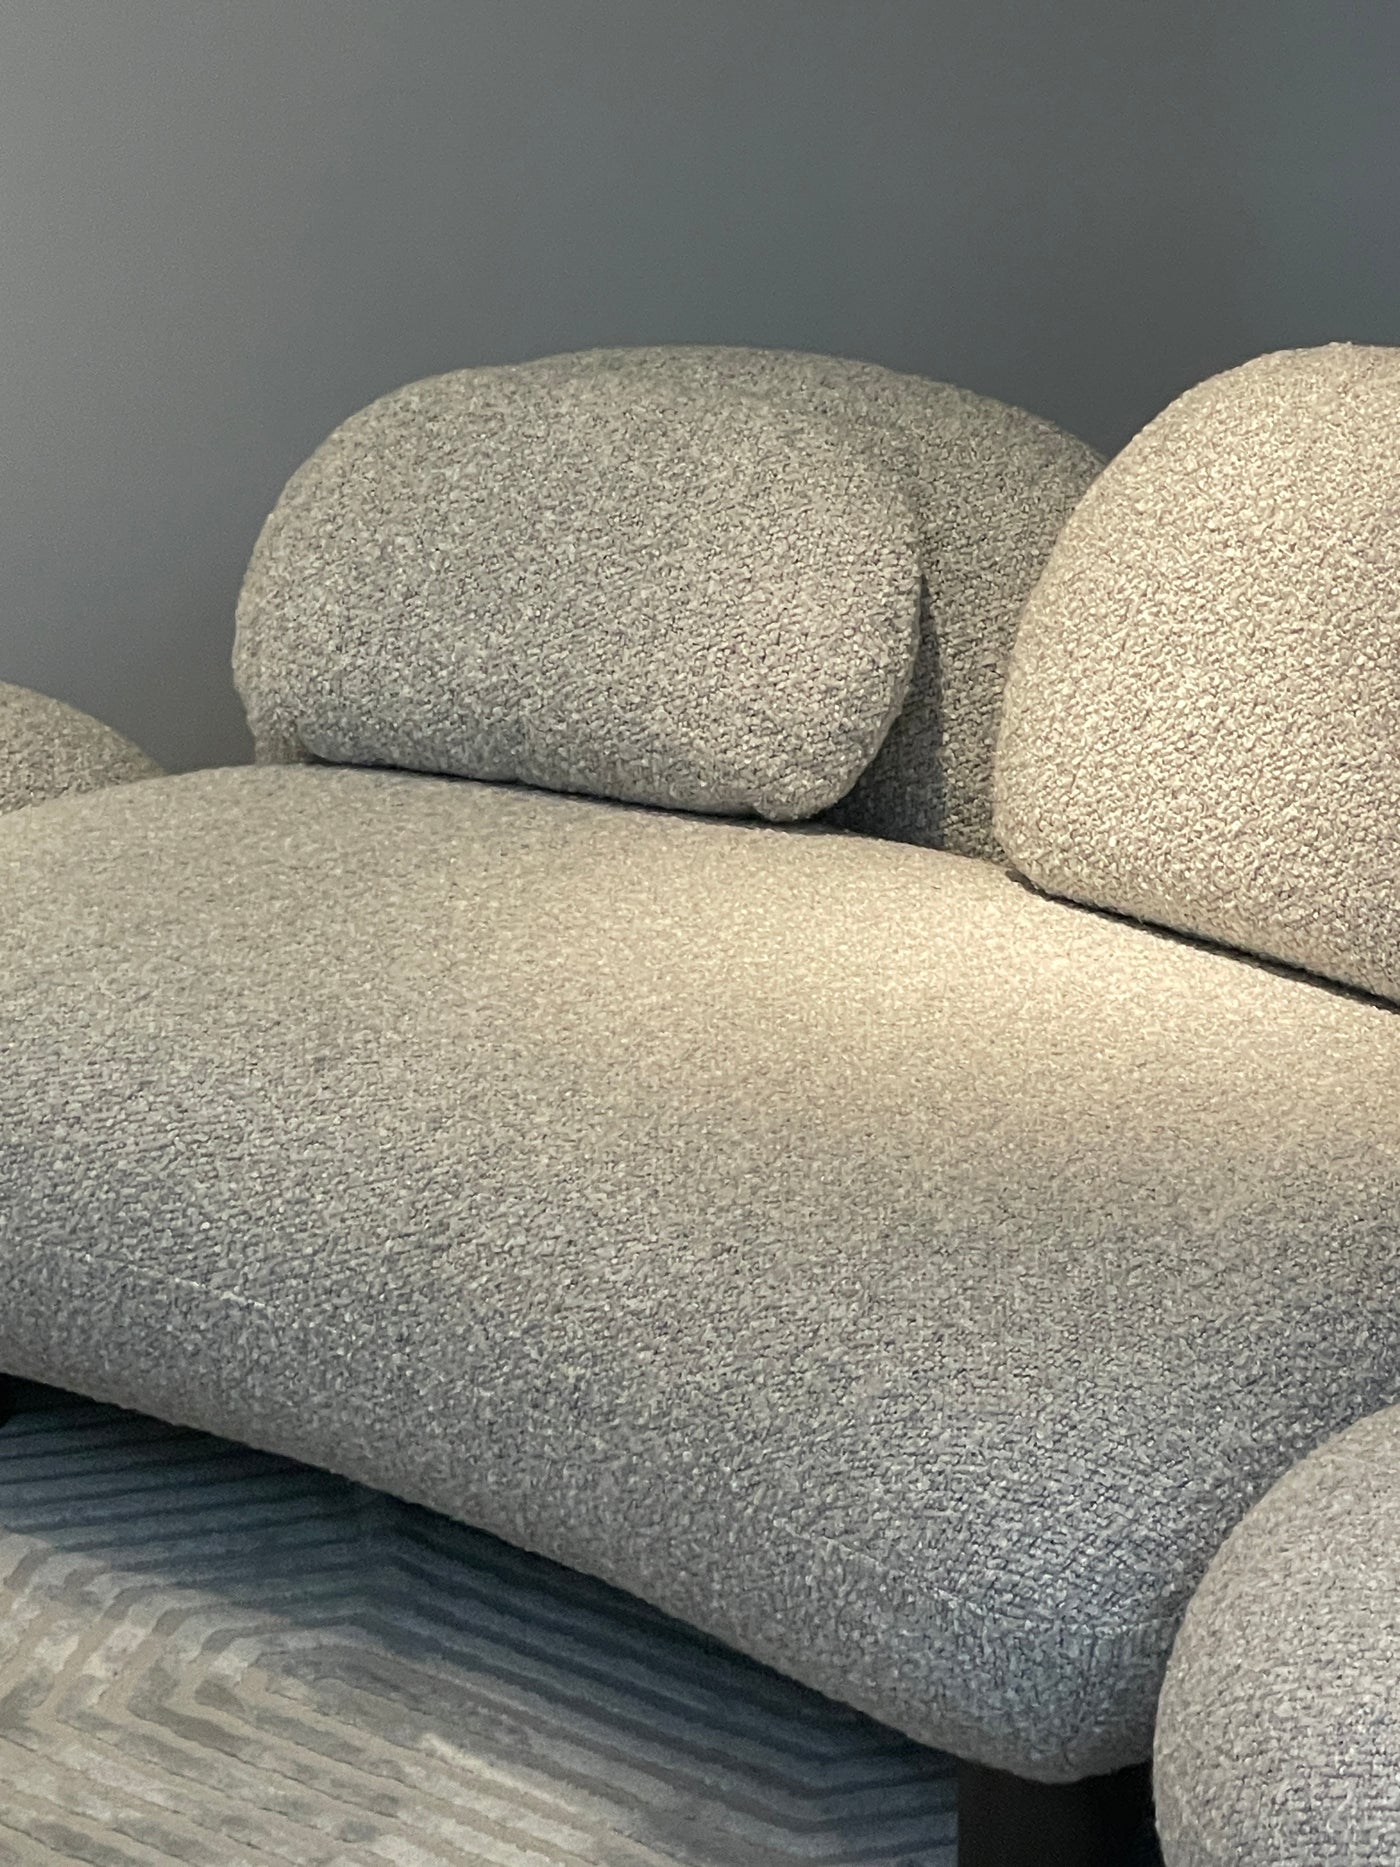 Pebble Modular Sofa